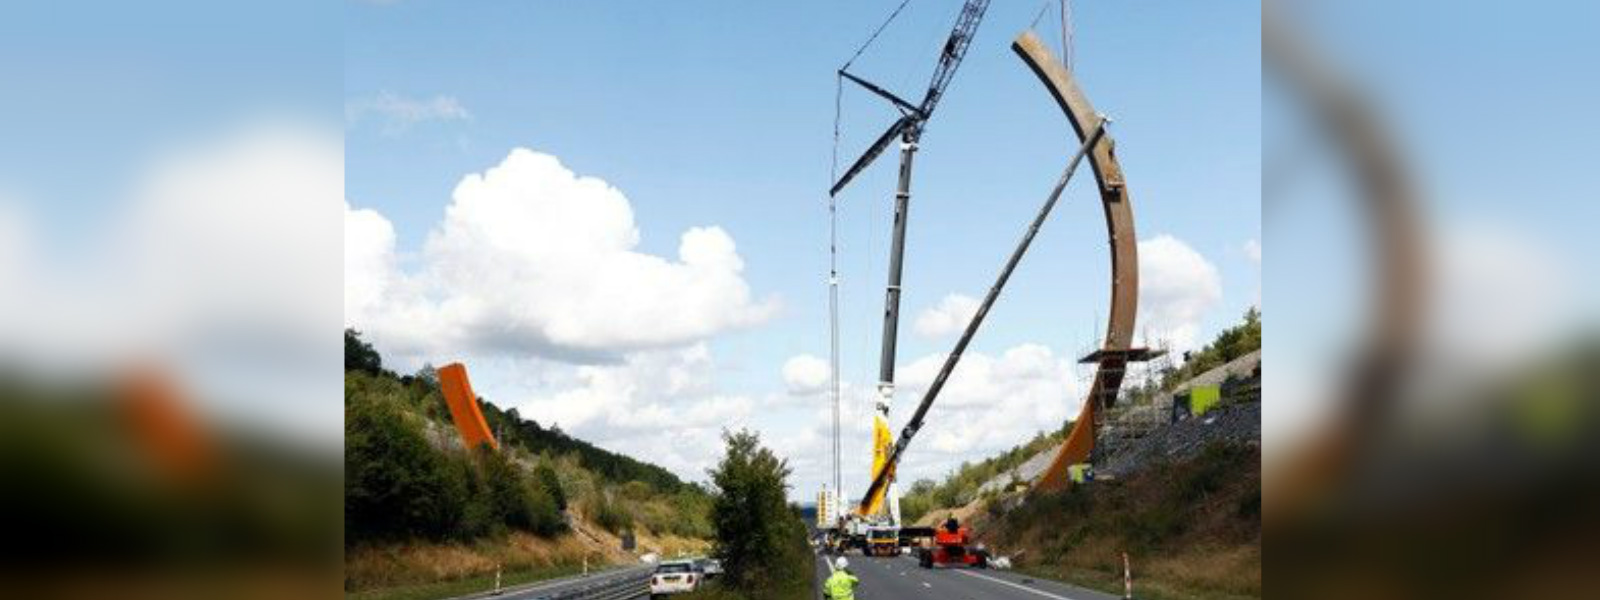 World's biggest sculpture on Belgian highway